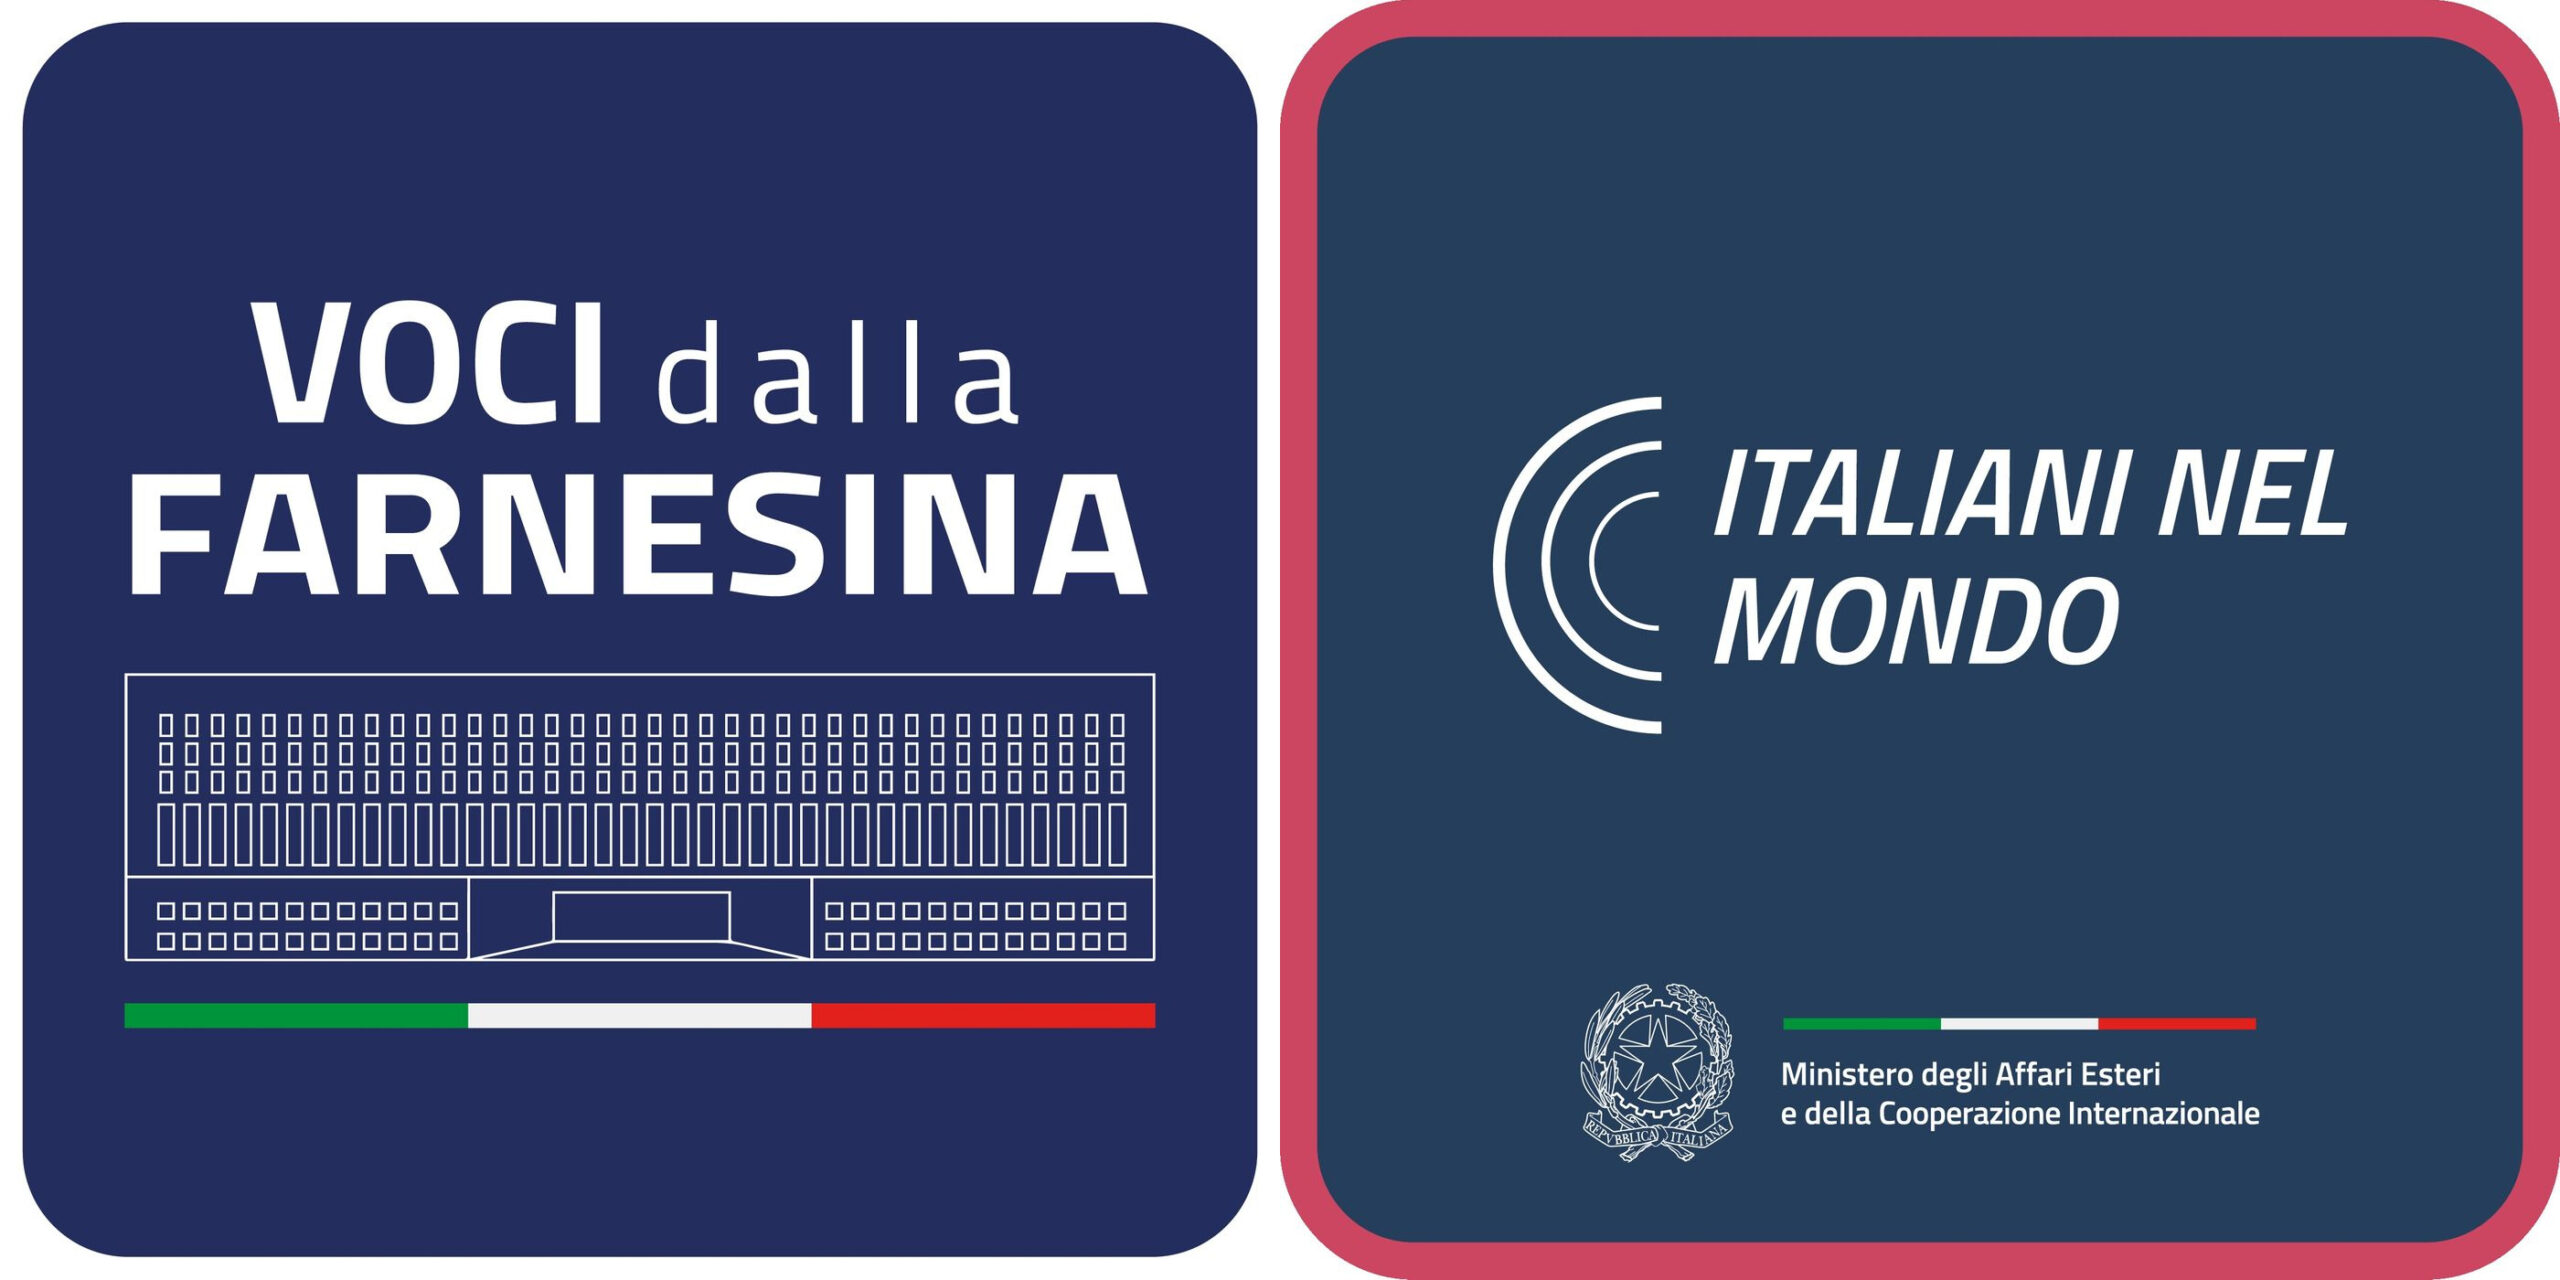 Crasis mellem logoerne for "Voci della Farnesina" og "Italiani nel mondo"